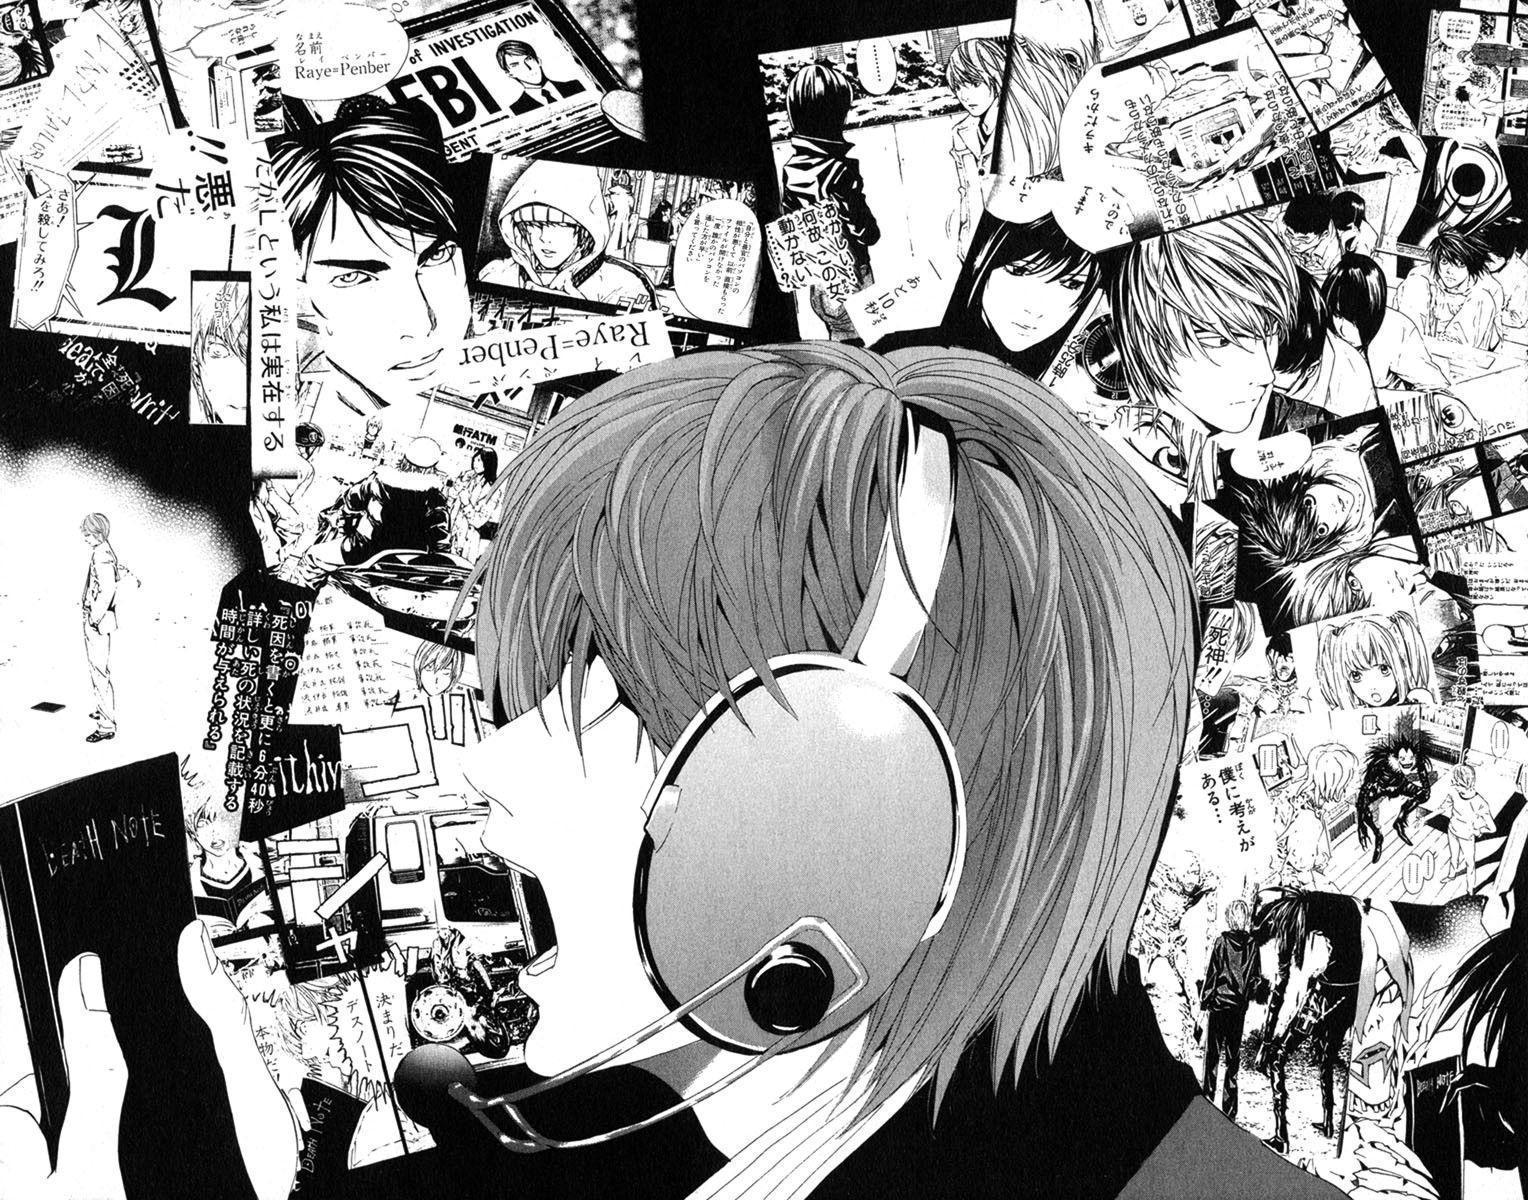 Dibujo extraido del manga Death Note elaborado por Tsugumi Ōba